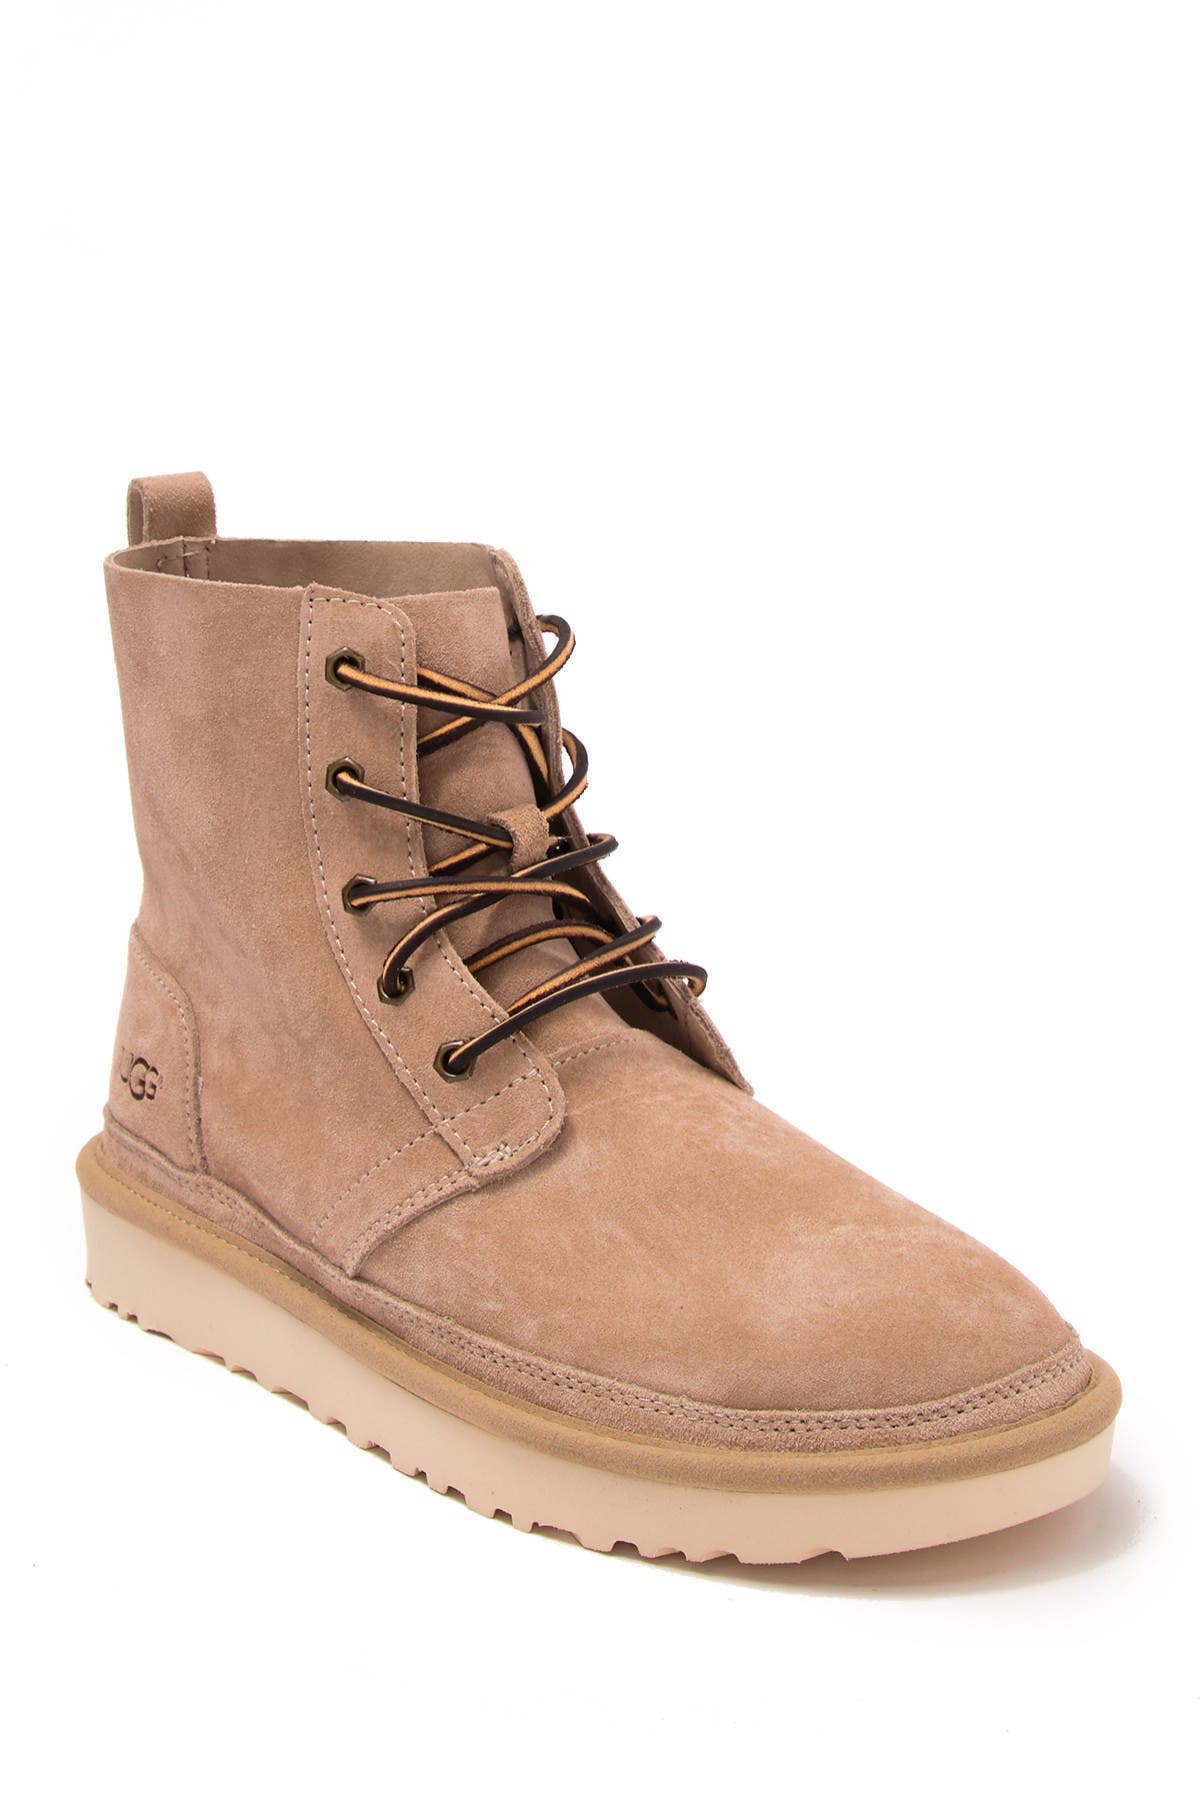 UGG | Harkley Pinnacle Leather Boot 